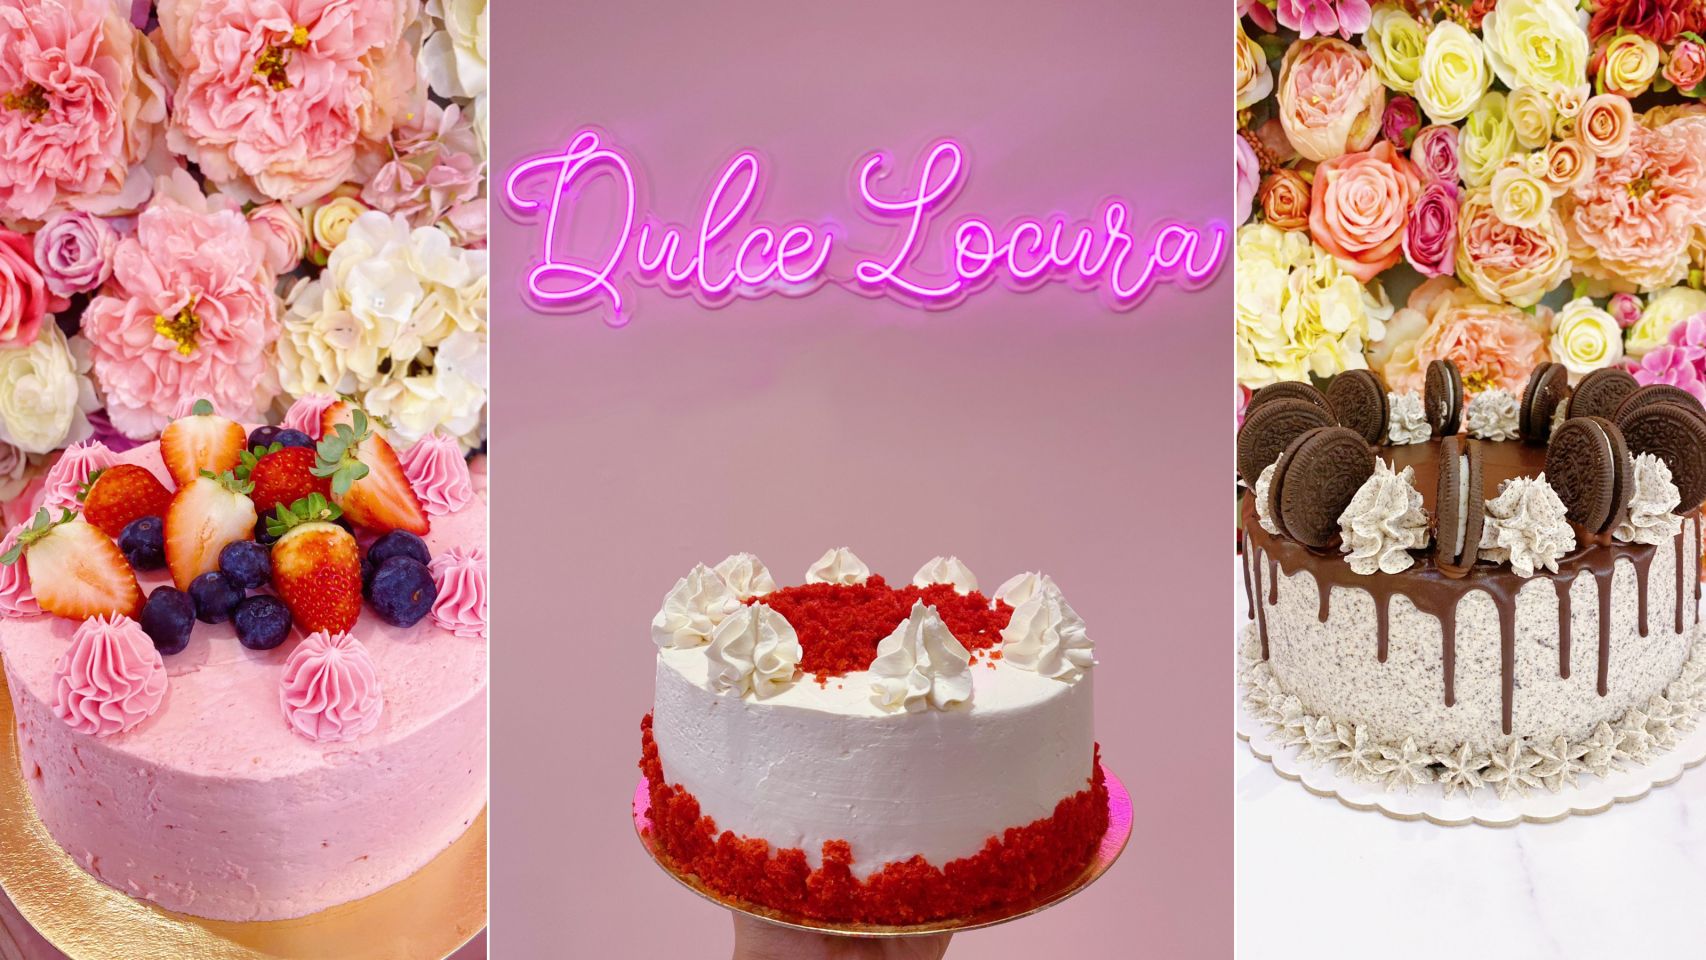 Las tartas caseras de Dulce Locura y su panel floral.